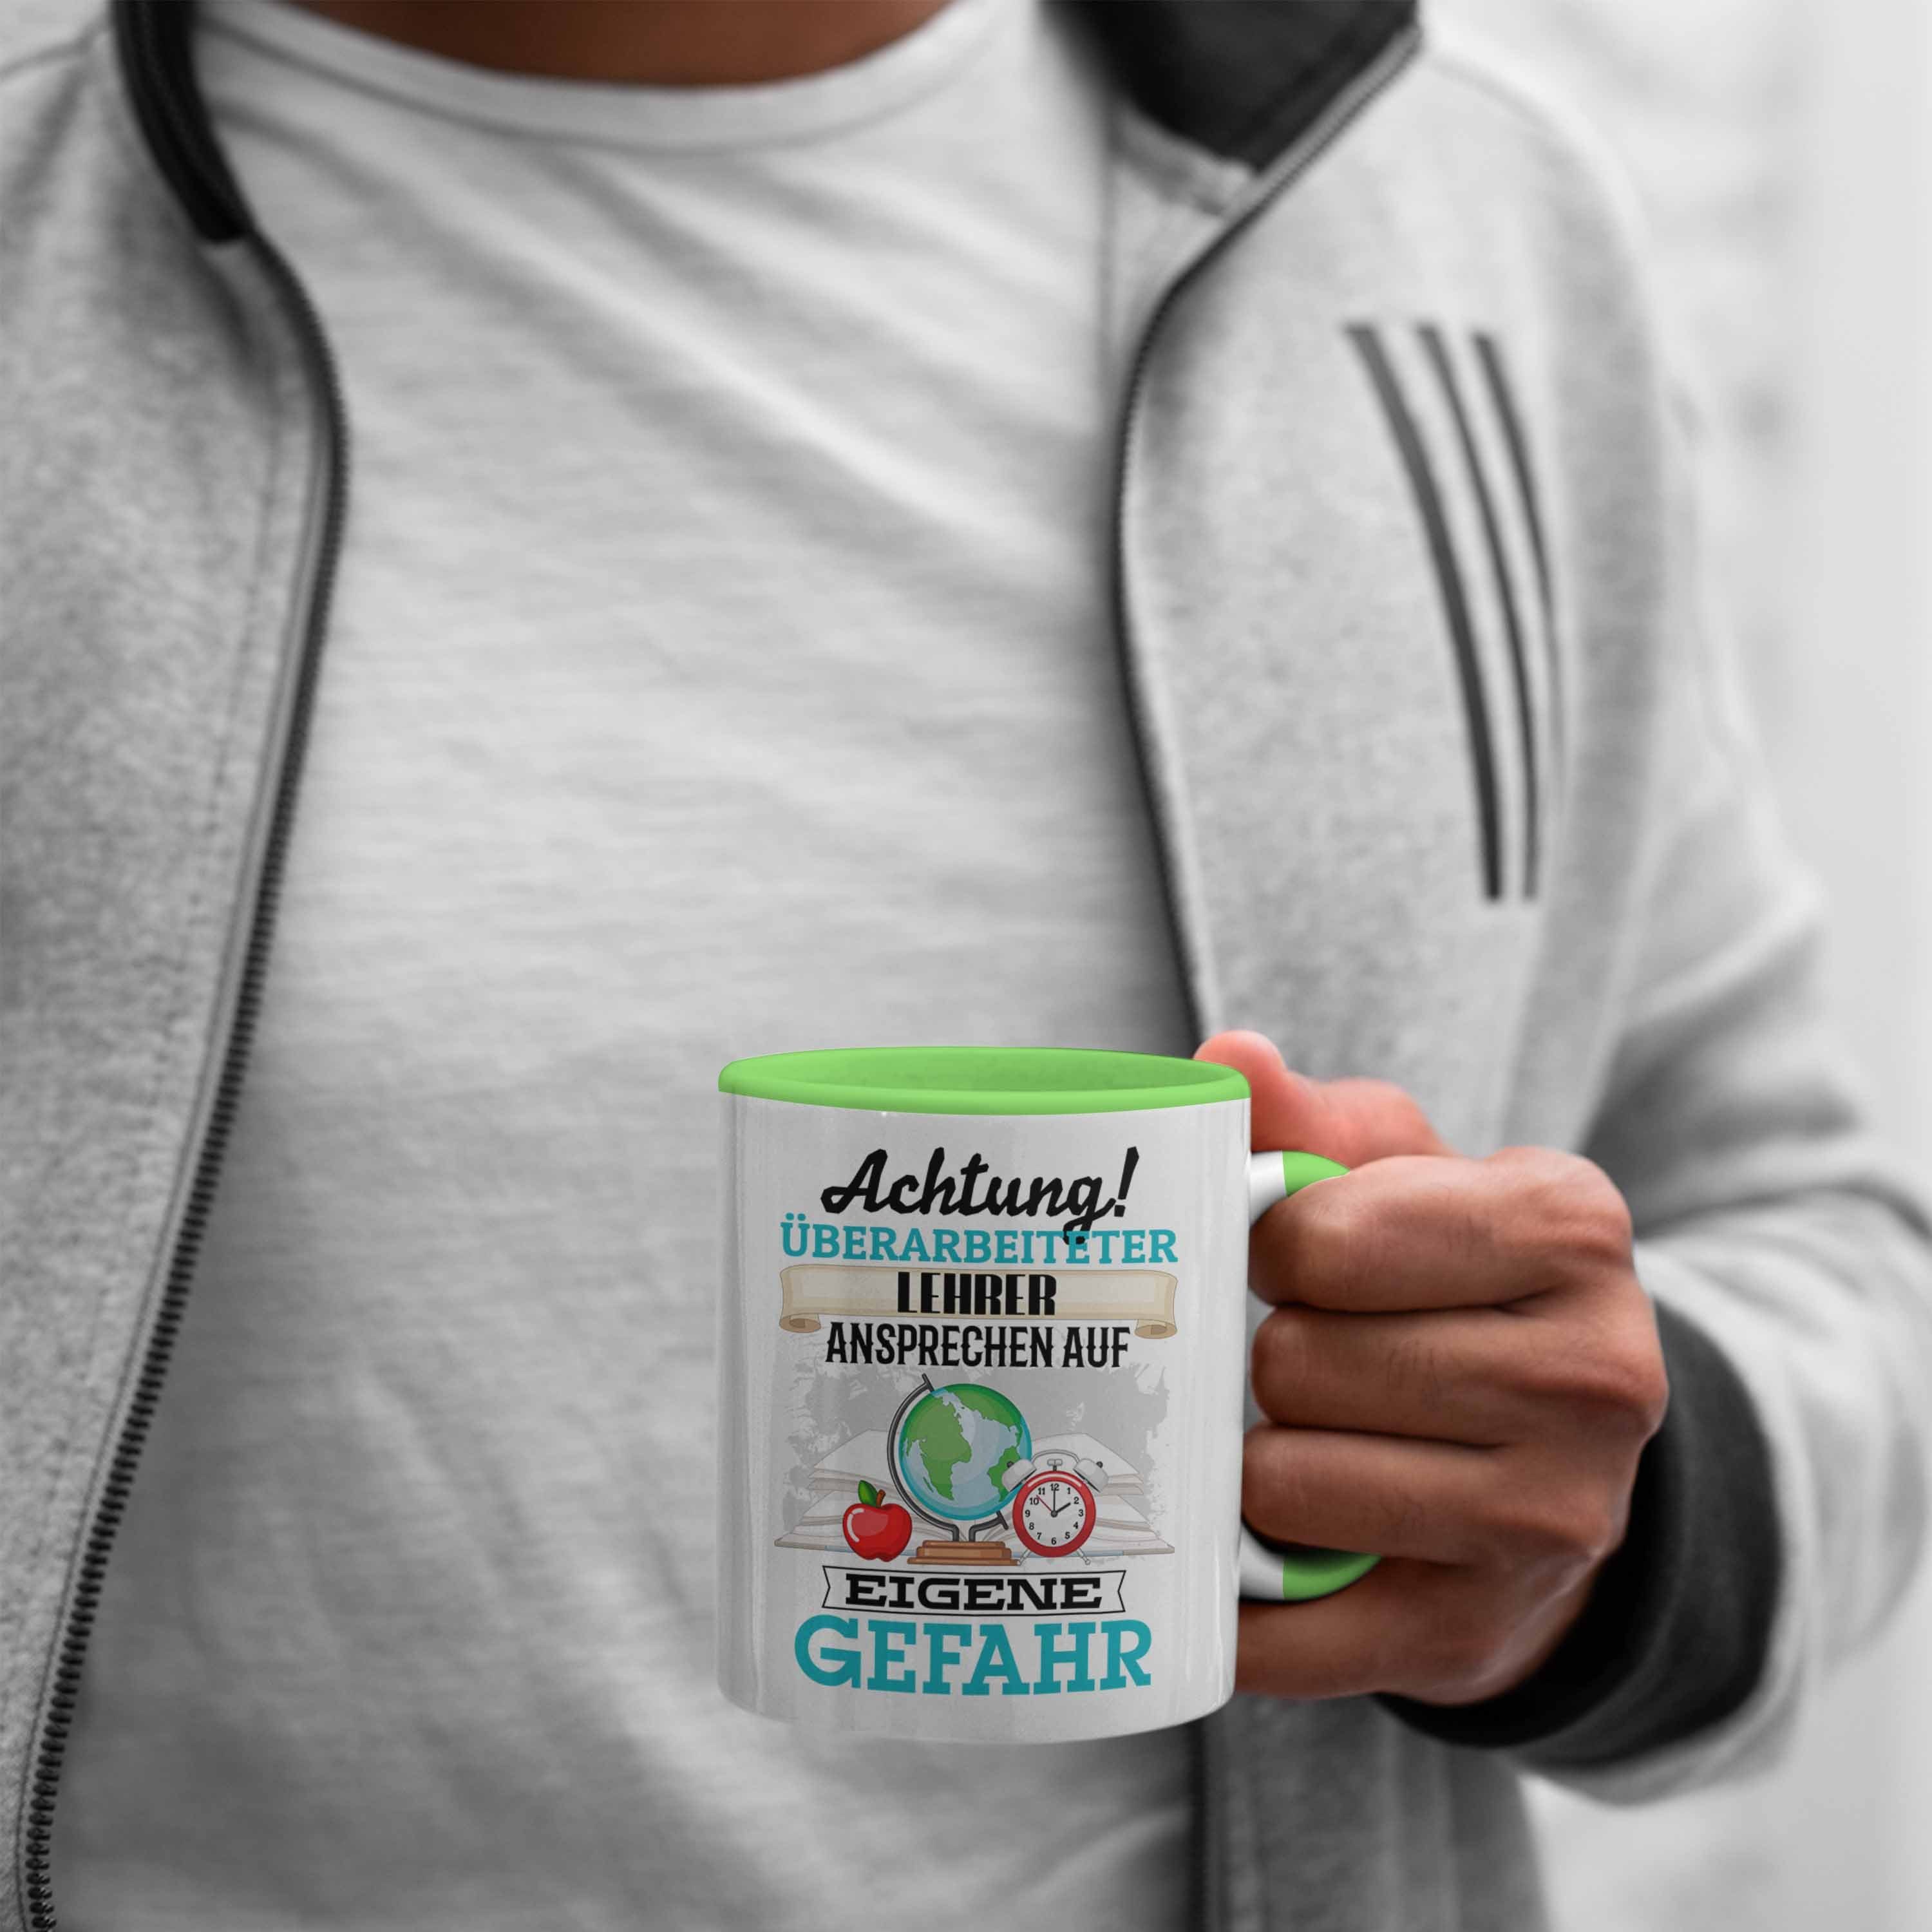 Kaffeebecher Tasse Tasse Spruch Lehrer Lustiger für Kl Geschenkidee Trendation Grün Geschenk